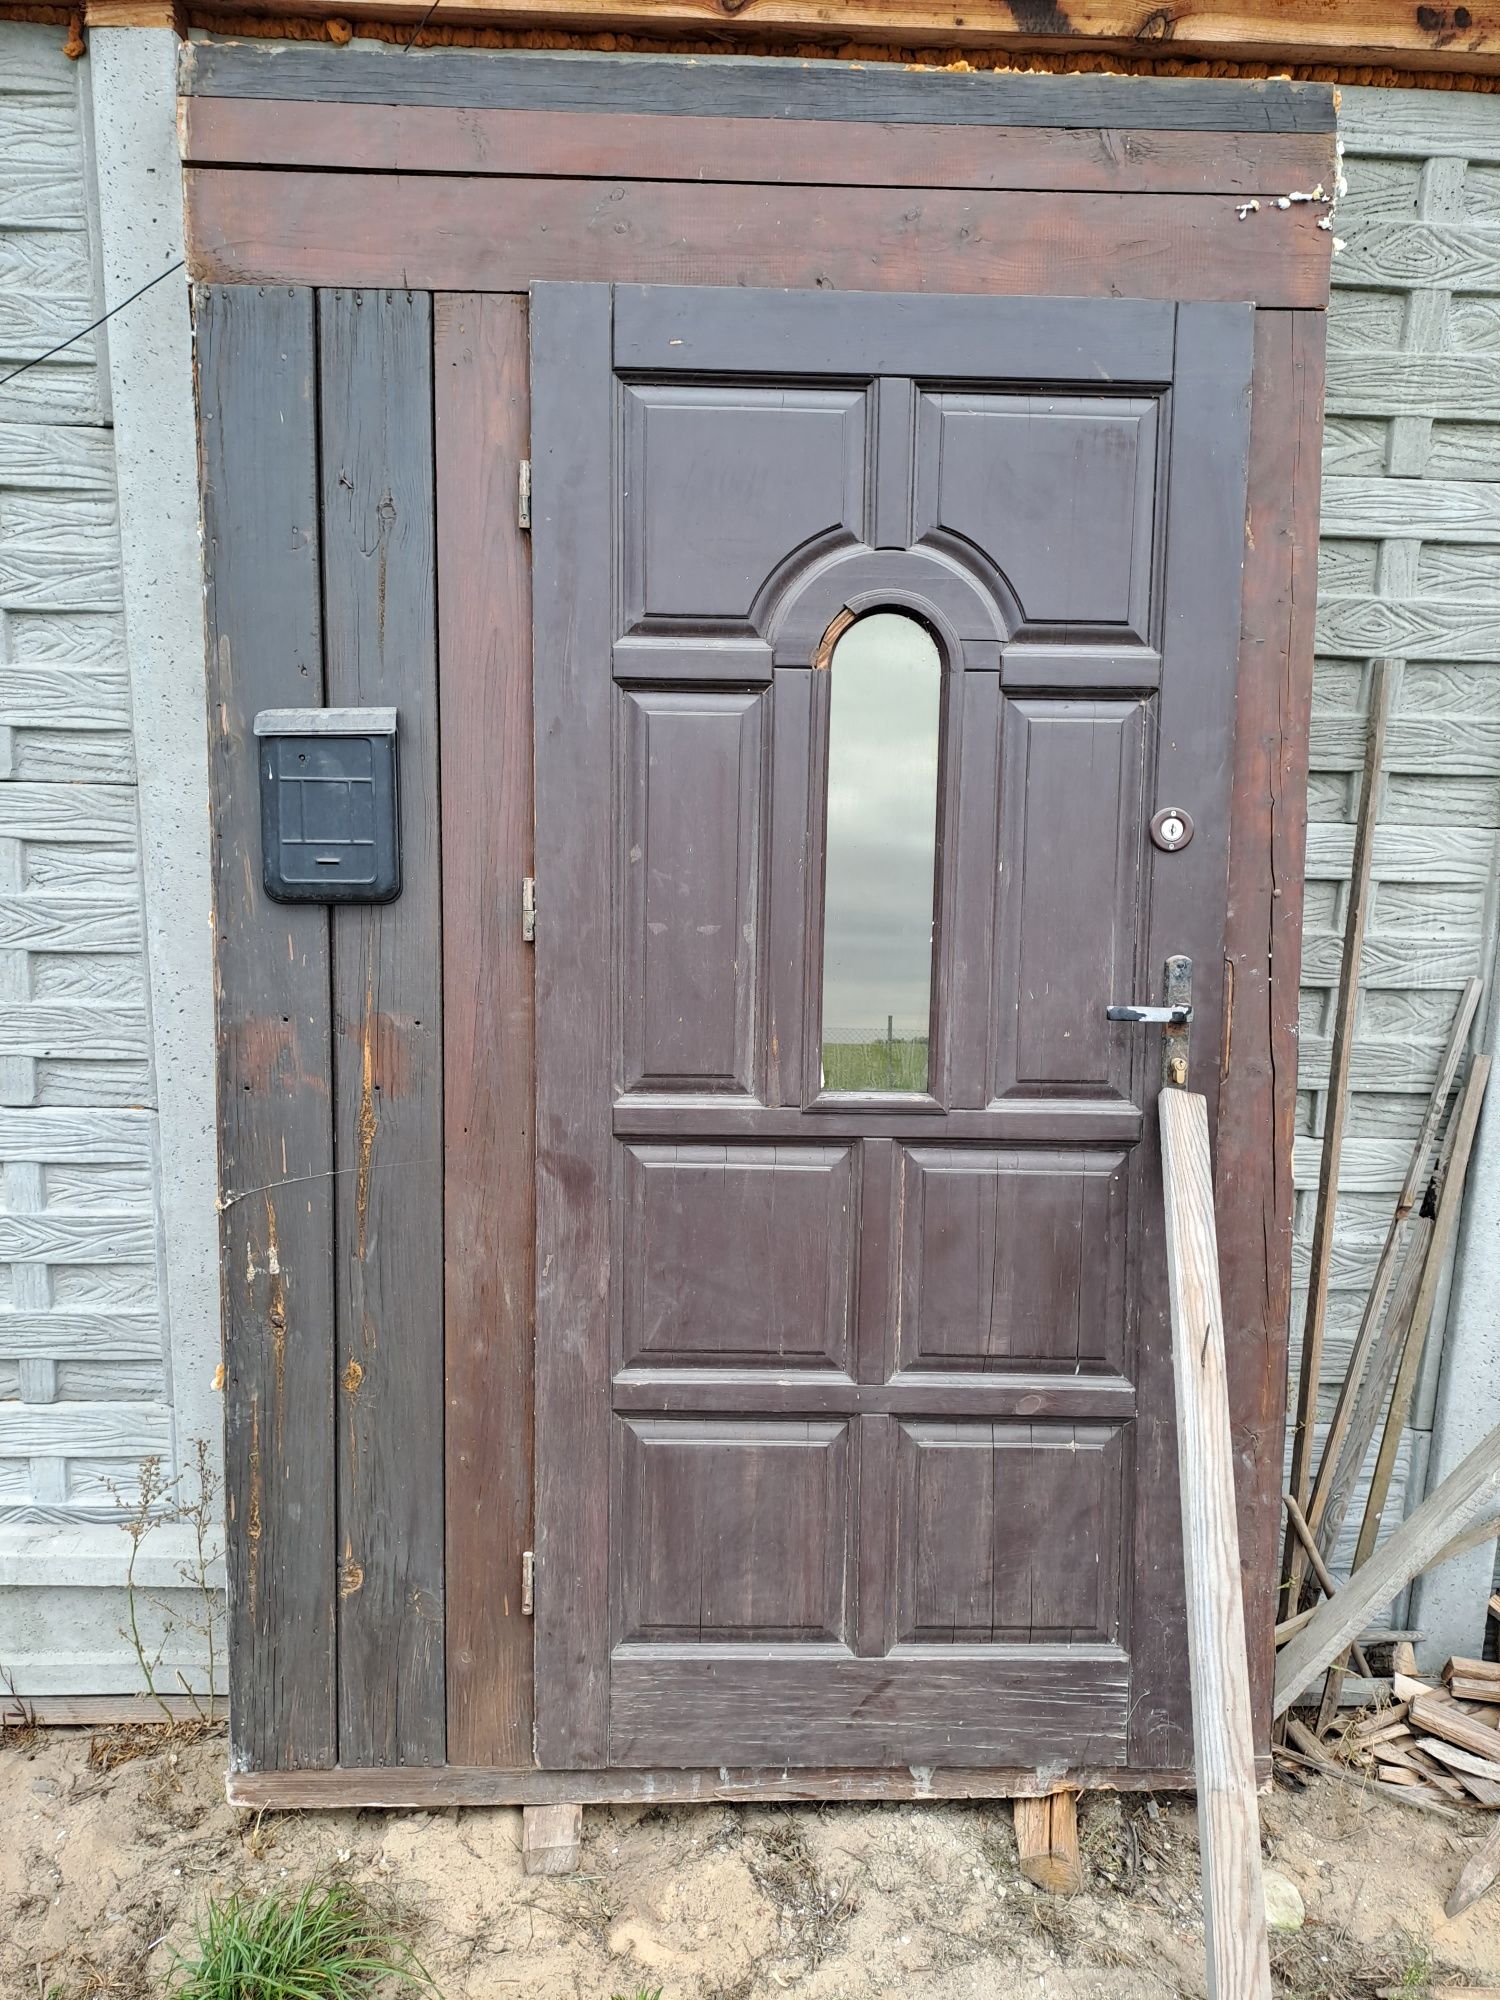 Drzwi drewniane budowlane 236x150cm